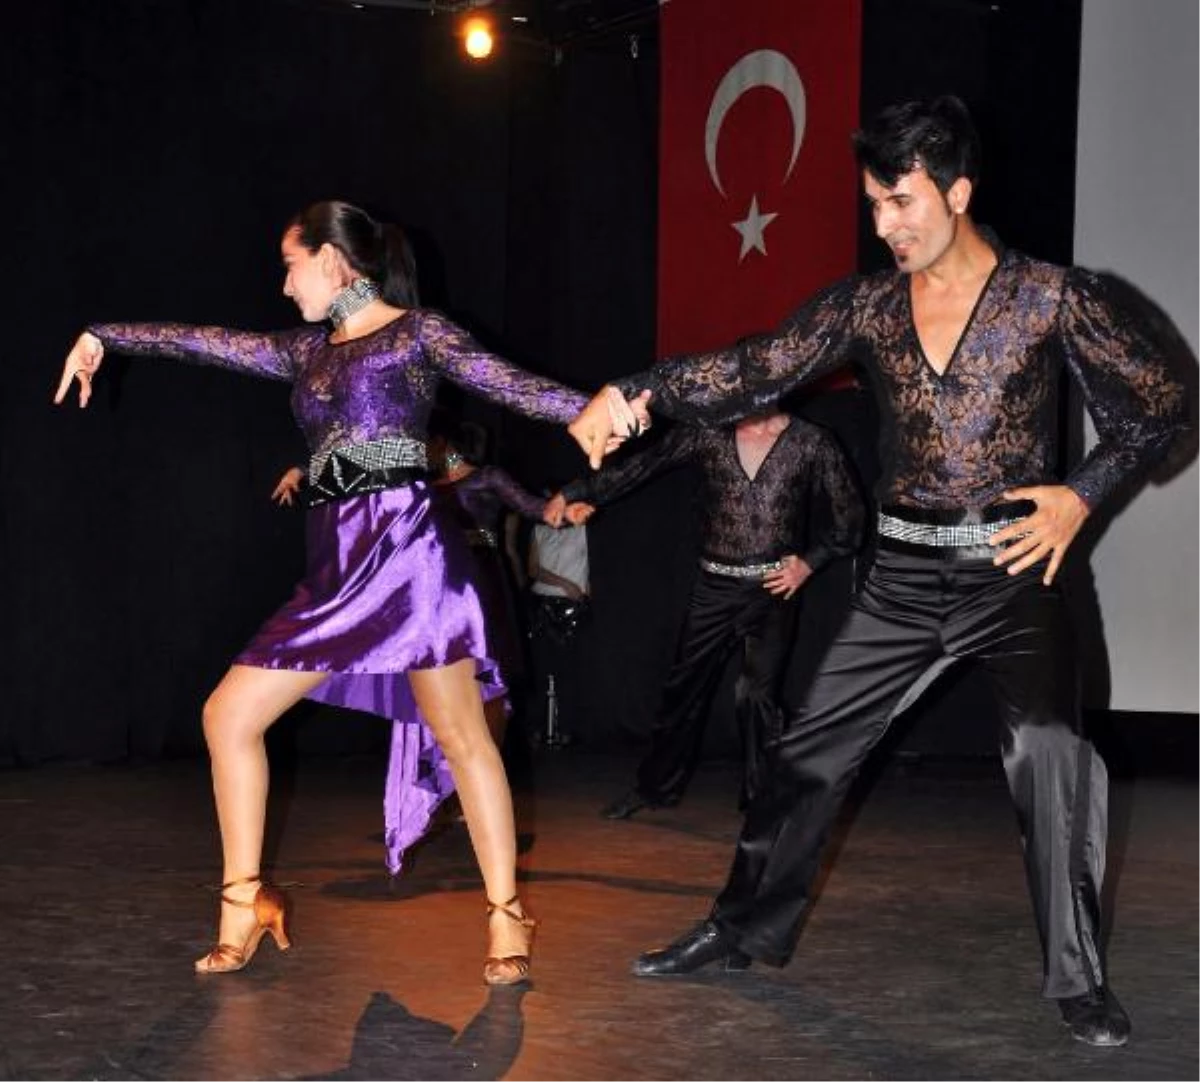 Antalyalı modern dansı öğrendi
